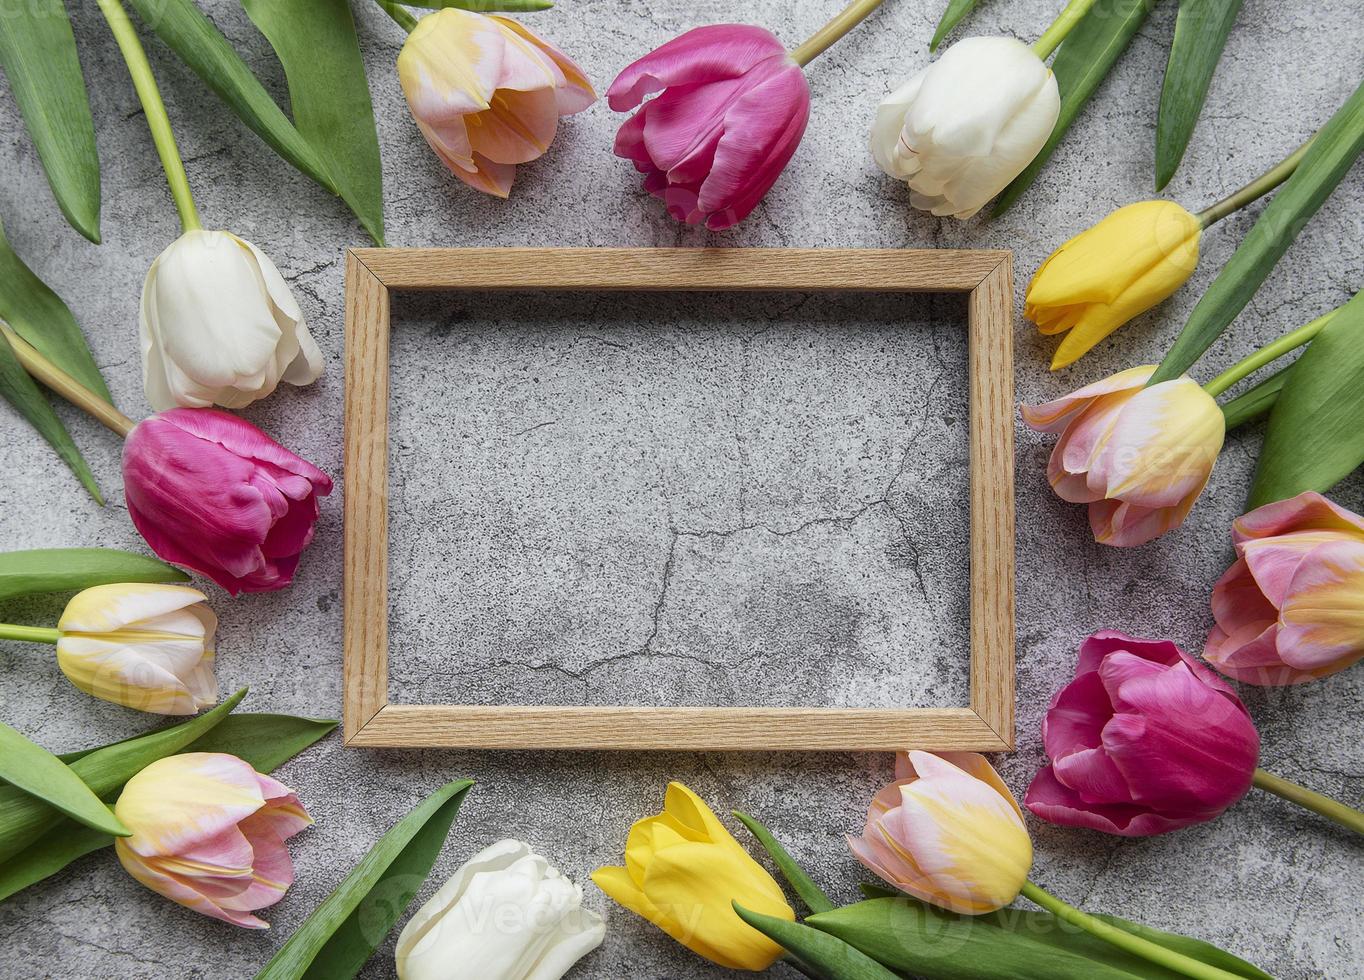 lentetulpen op een betonnen achtergrond foto